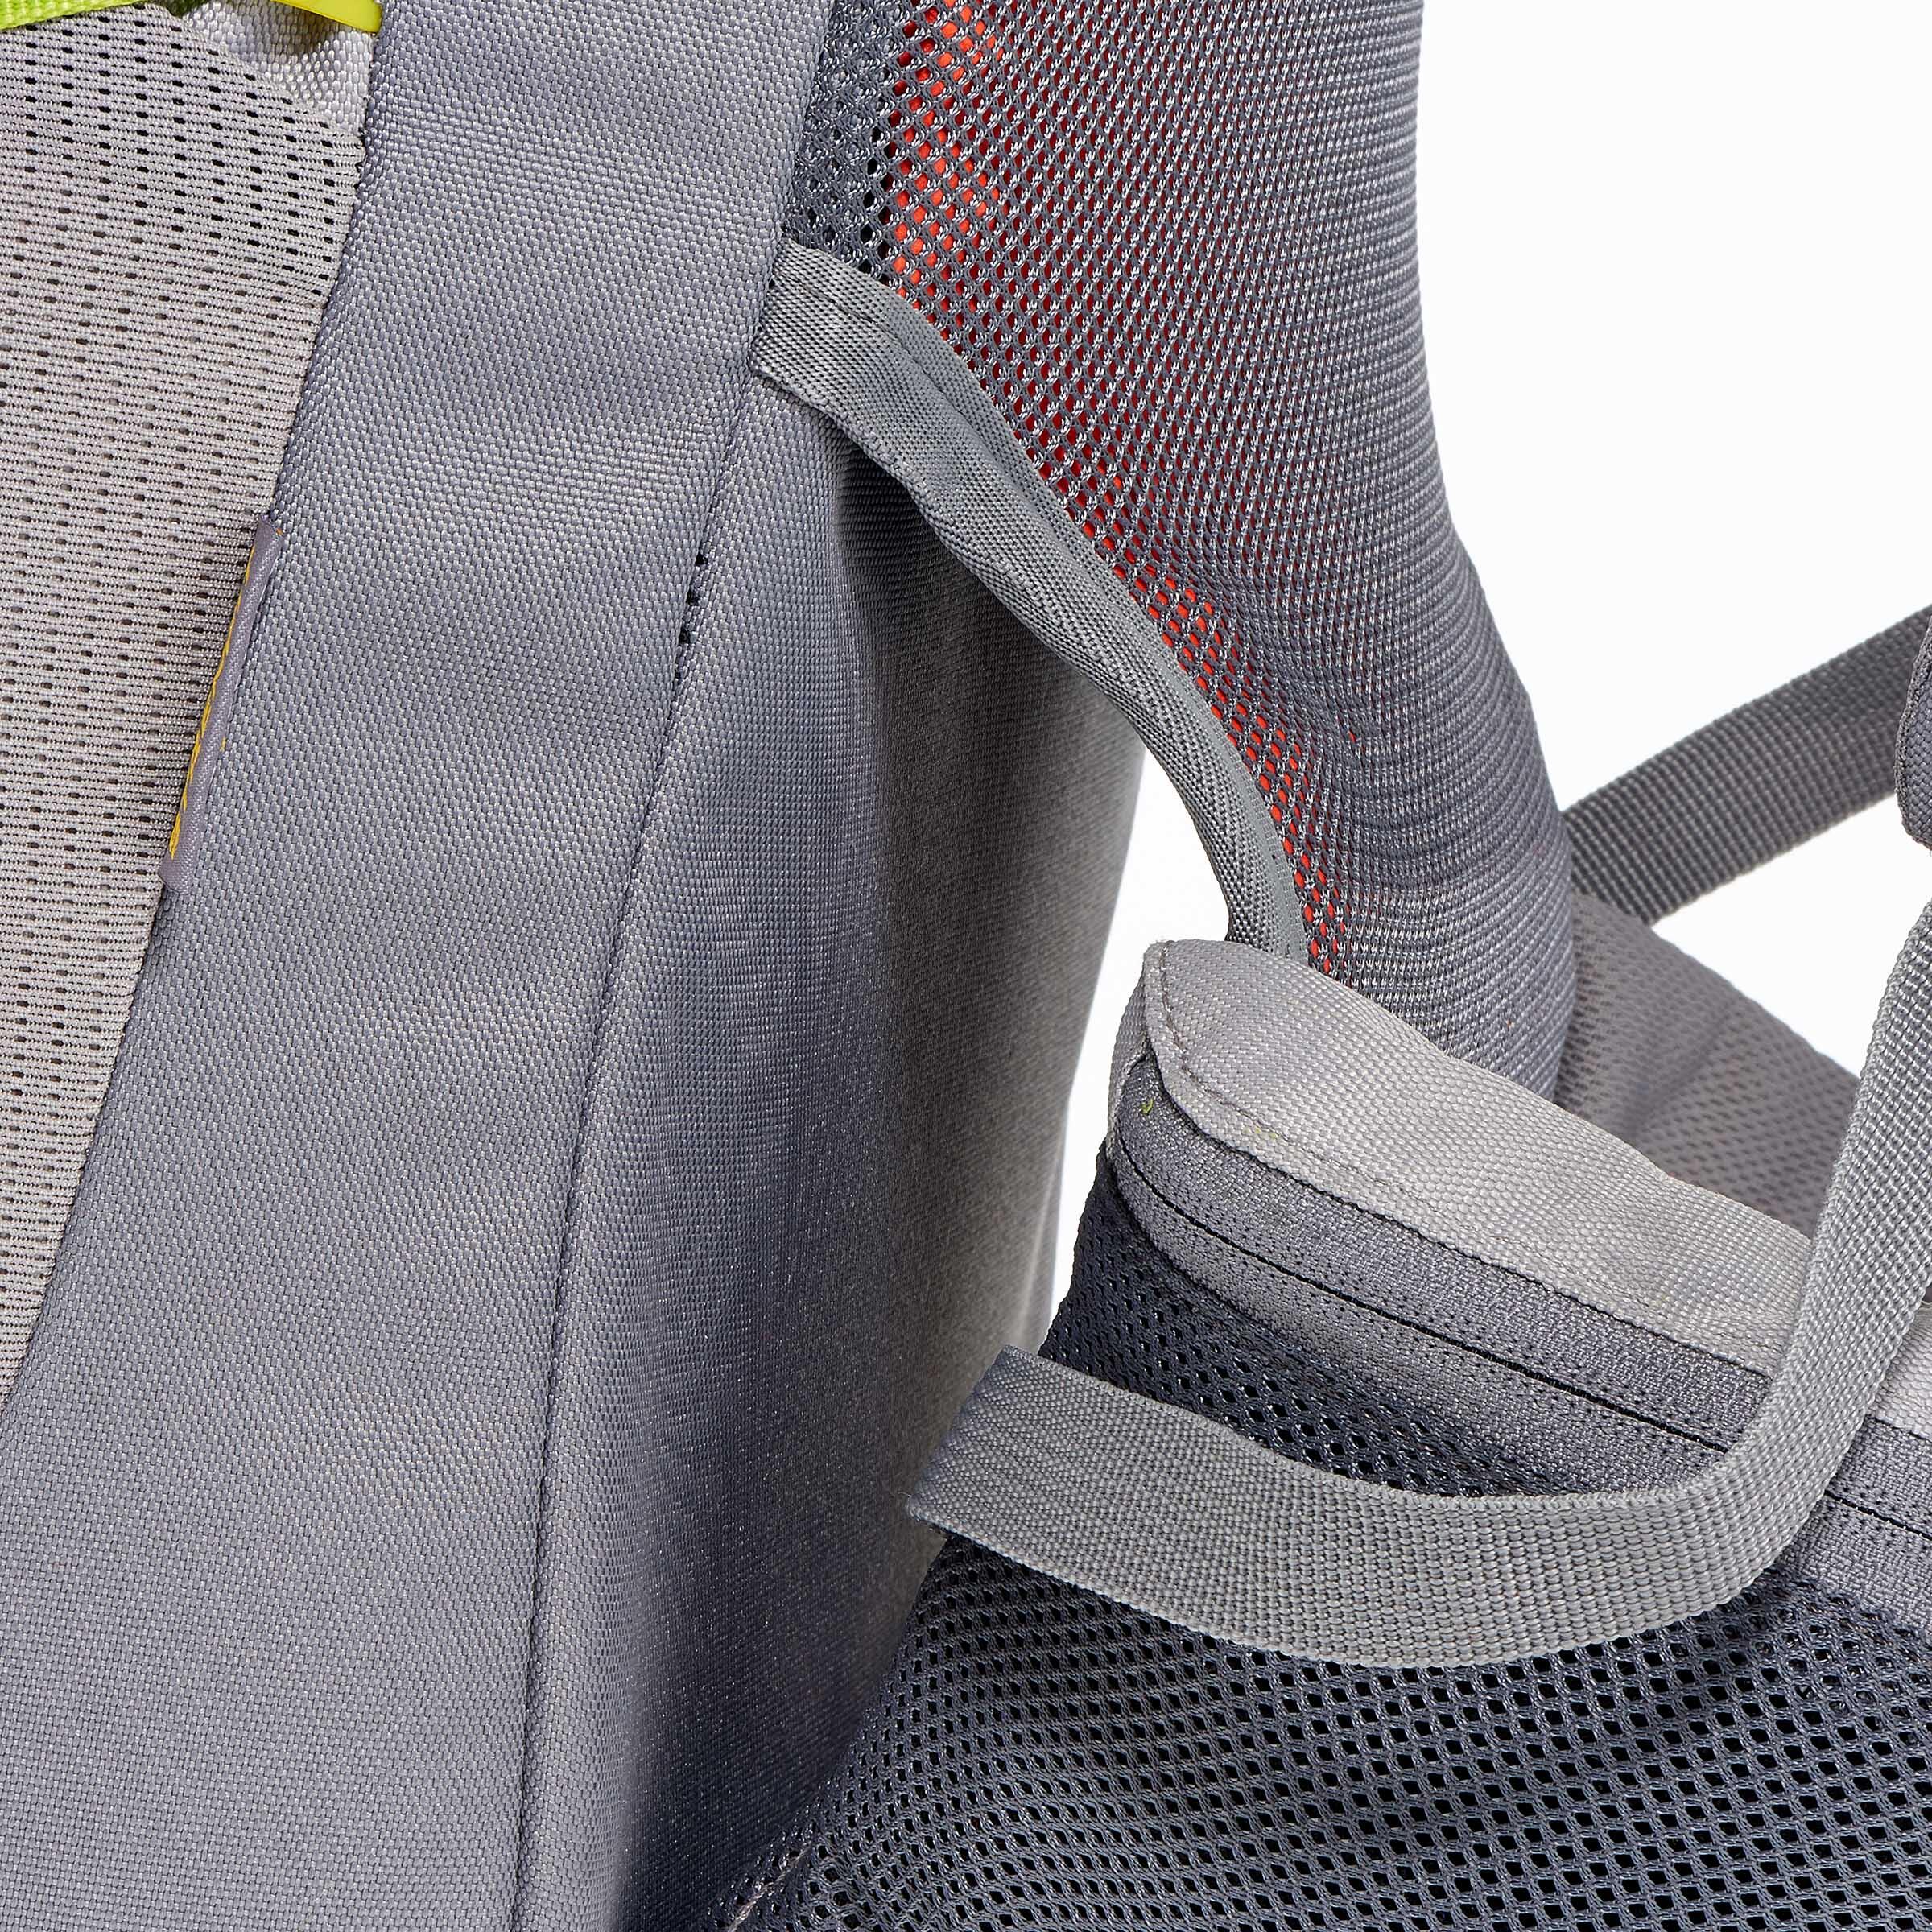 FORCLAZ 40 AIR backpack BLUE: AIR COOLING Label - regulates back perspiration 15/19